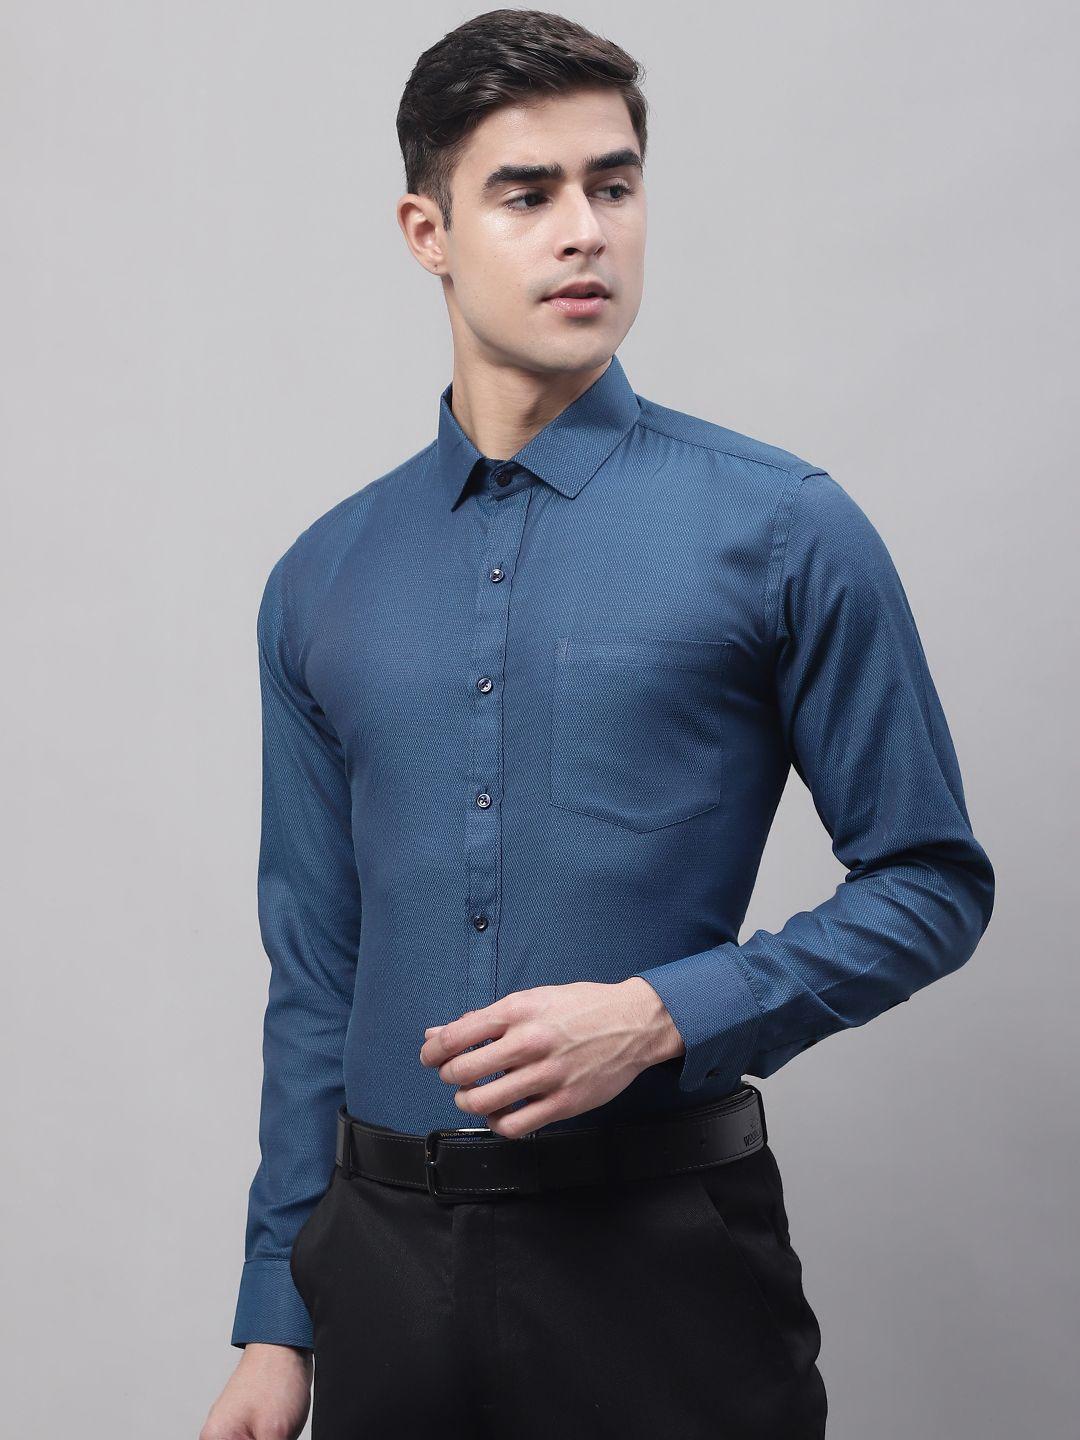 style-quotient-men-formal-shirt